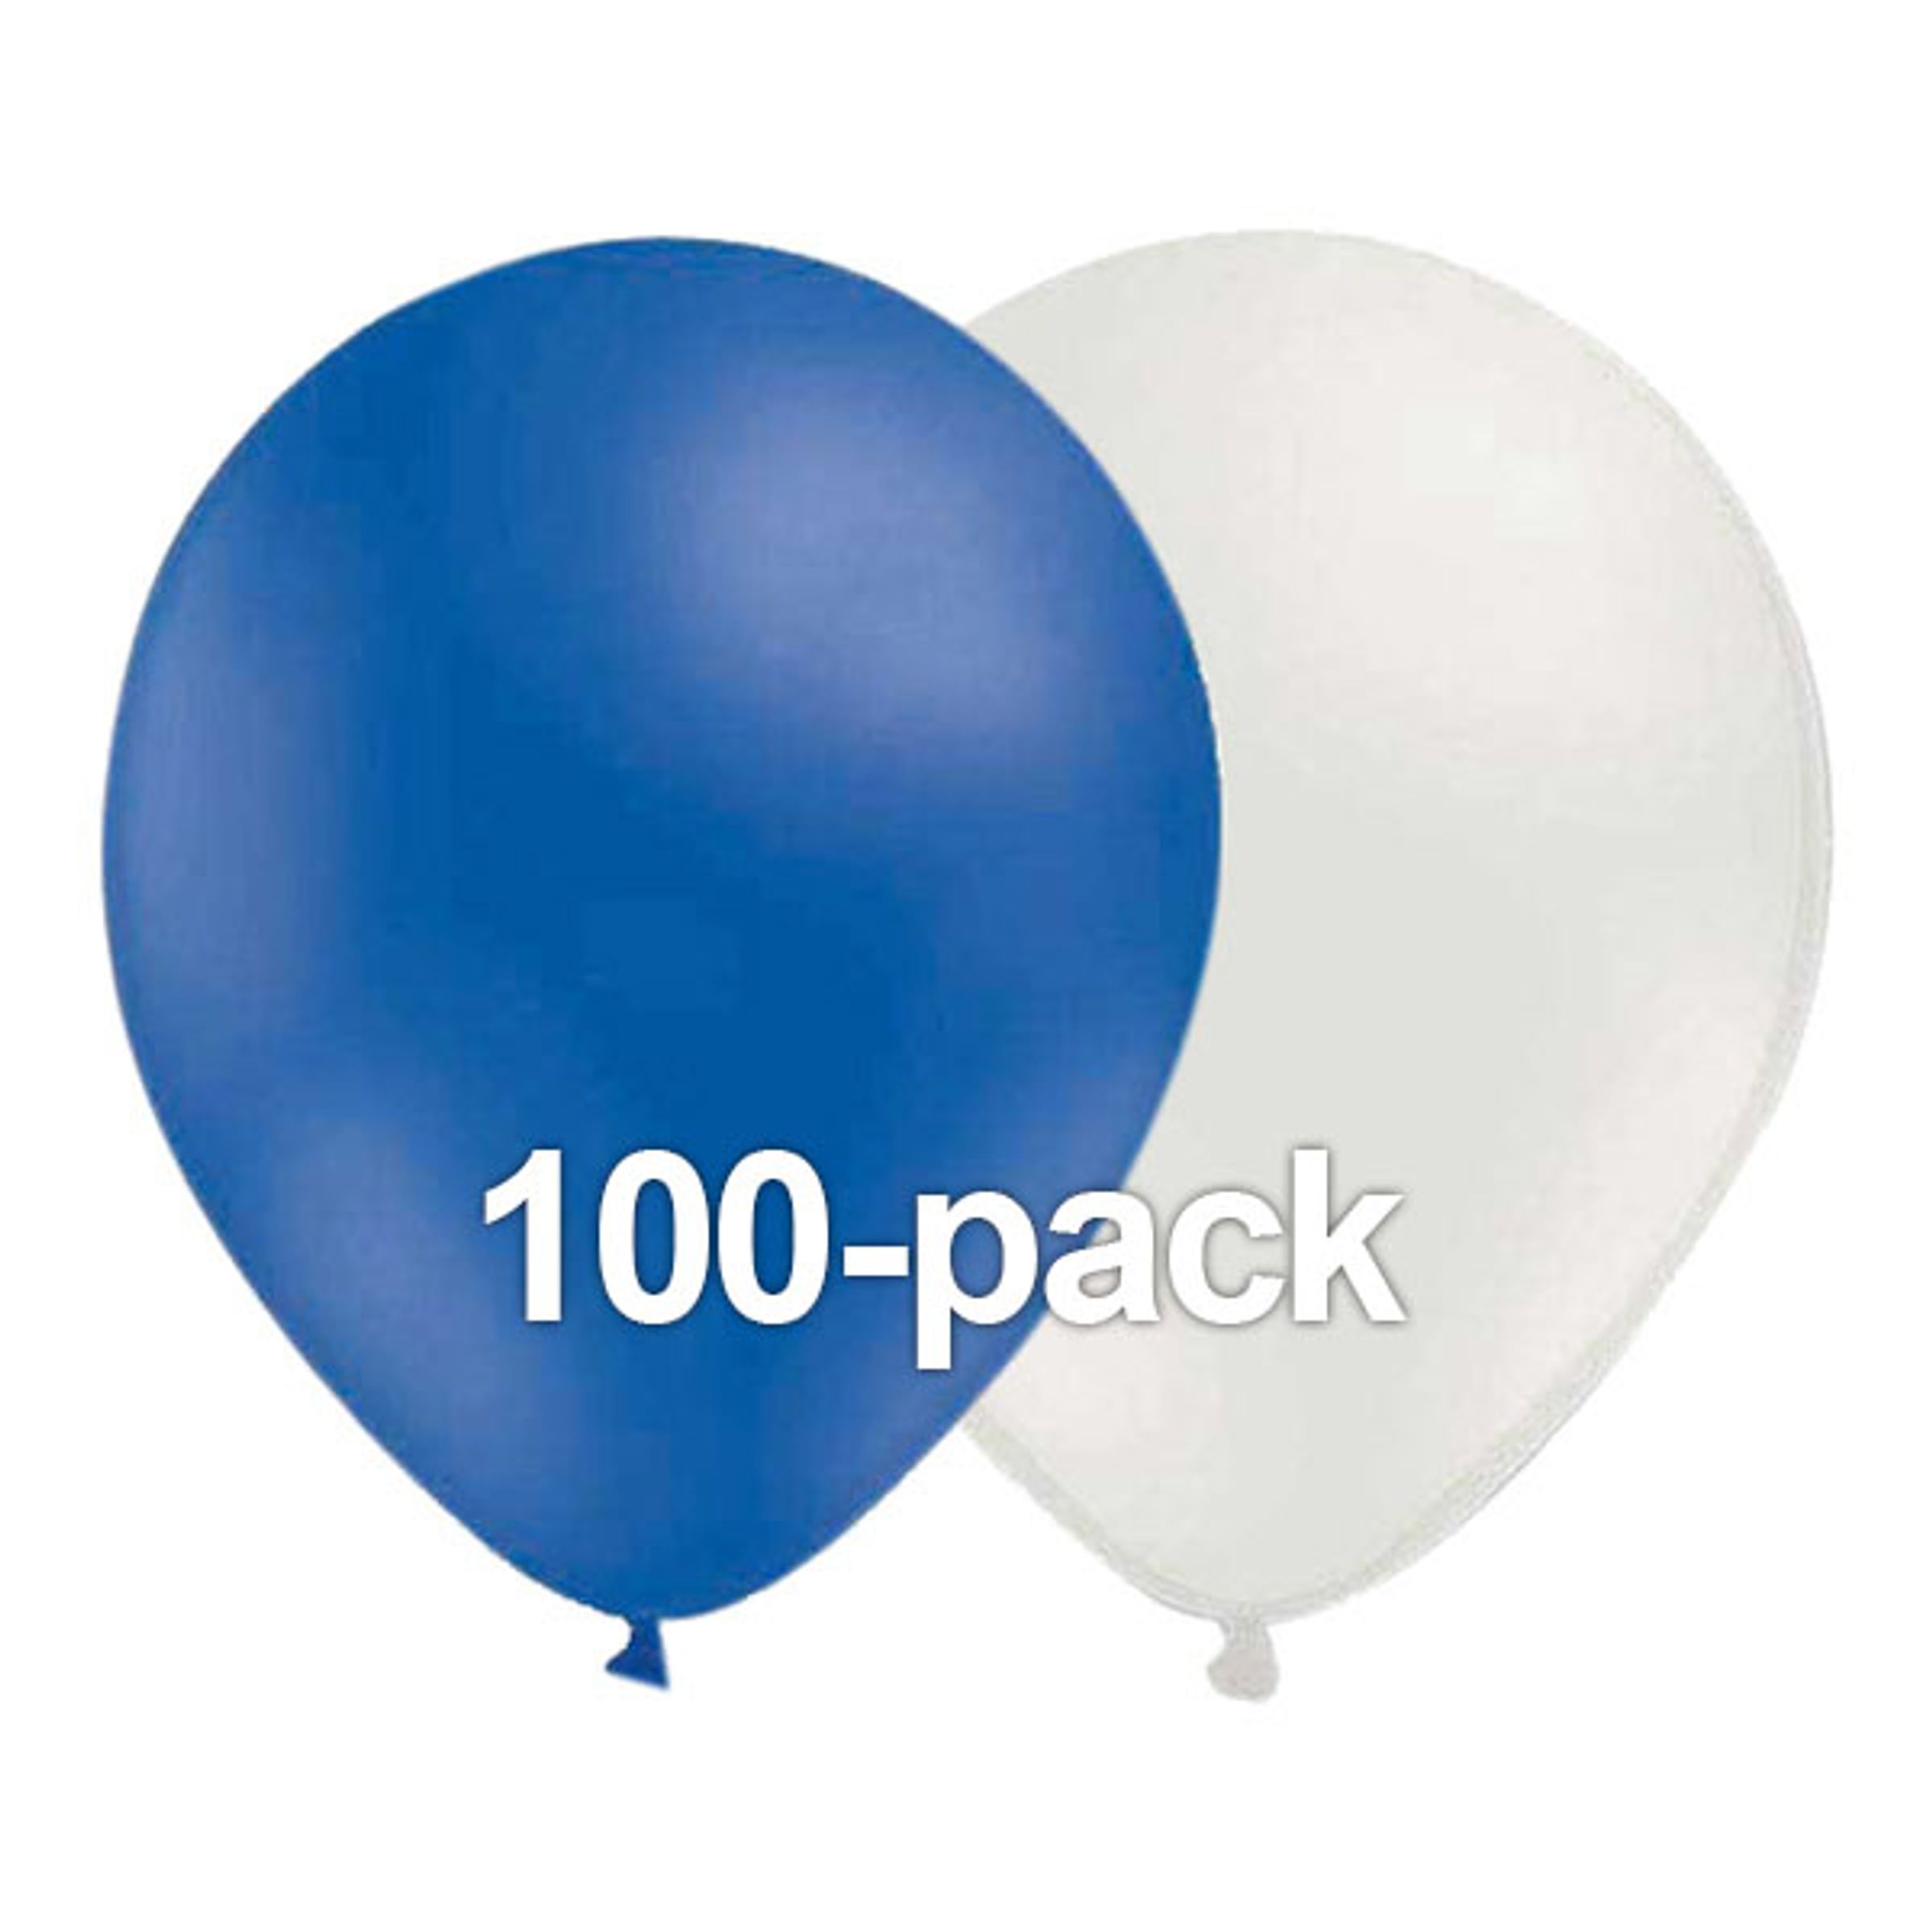 Ballongkombo Blå/Vit - 100-pack